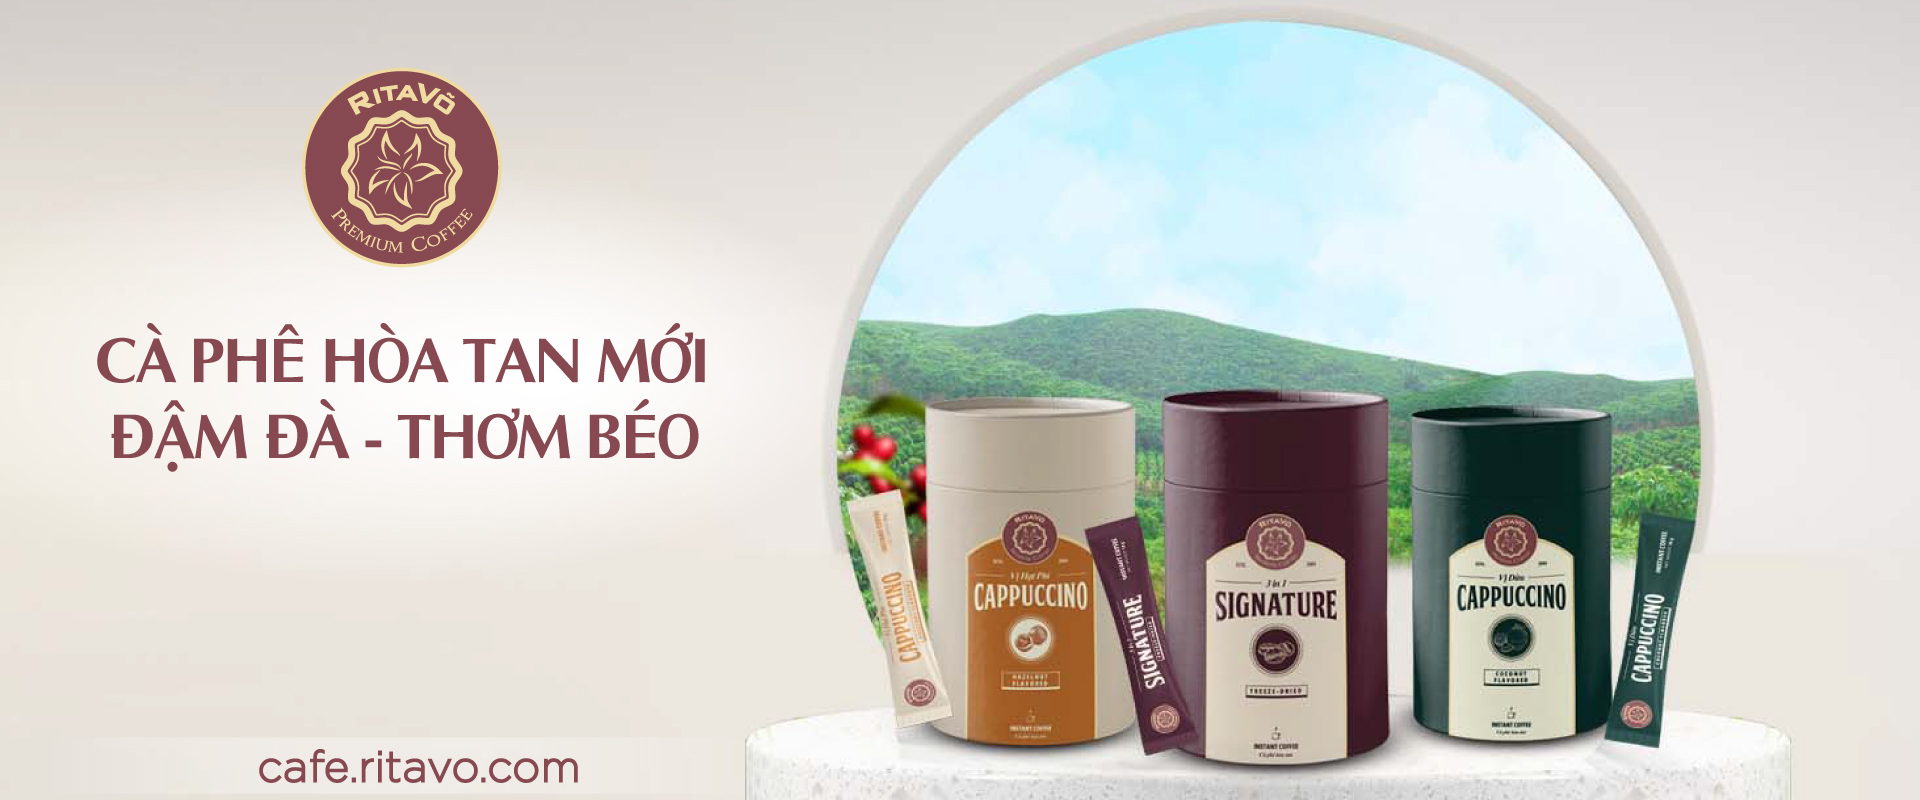 Ritavõ Cafe ra mắt bộ sản phẩm hòa tan mới - hương vị tự nhiên chuẩn gu